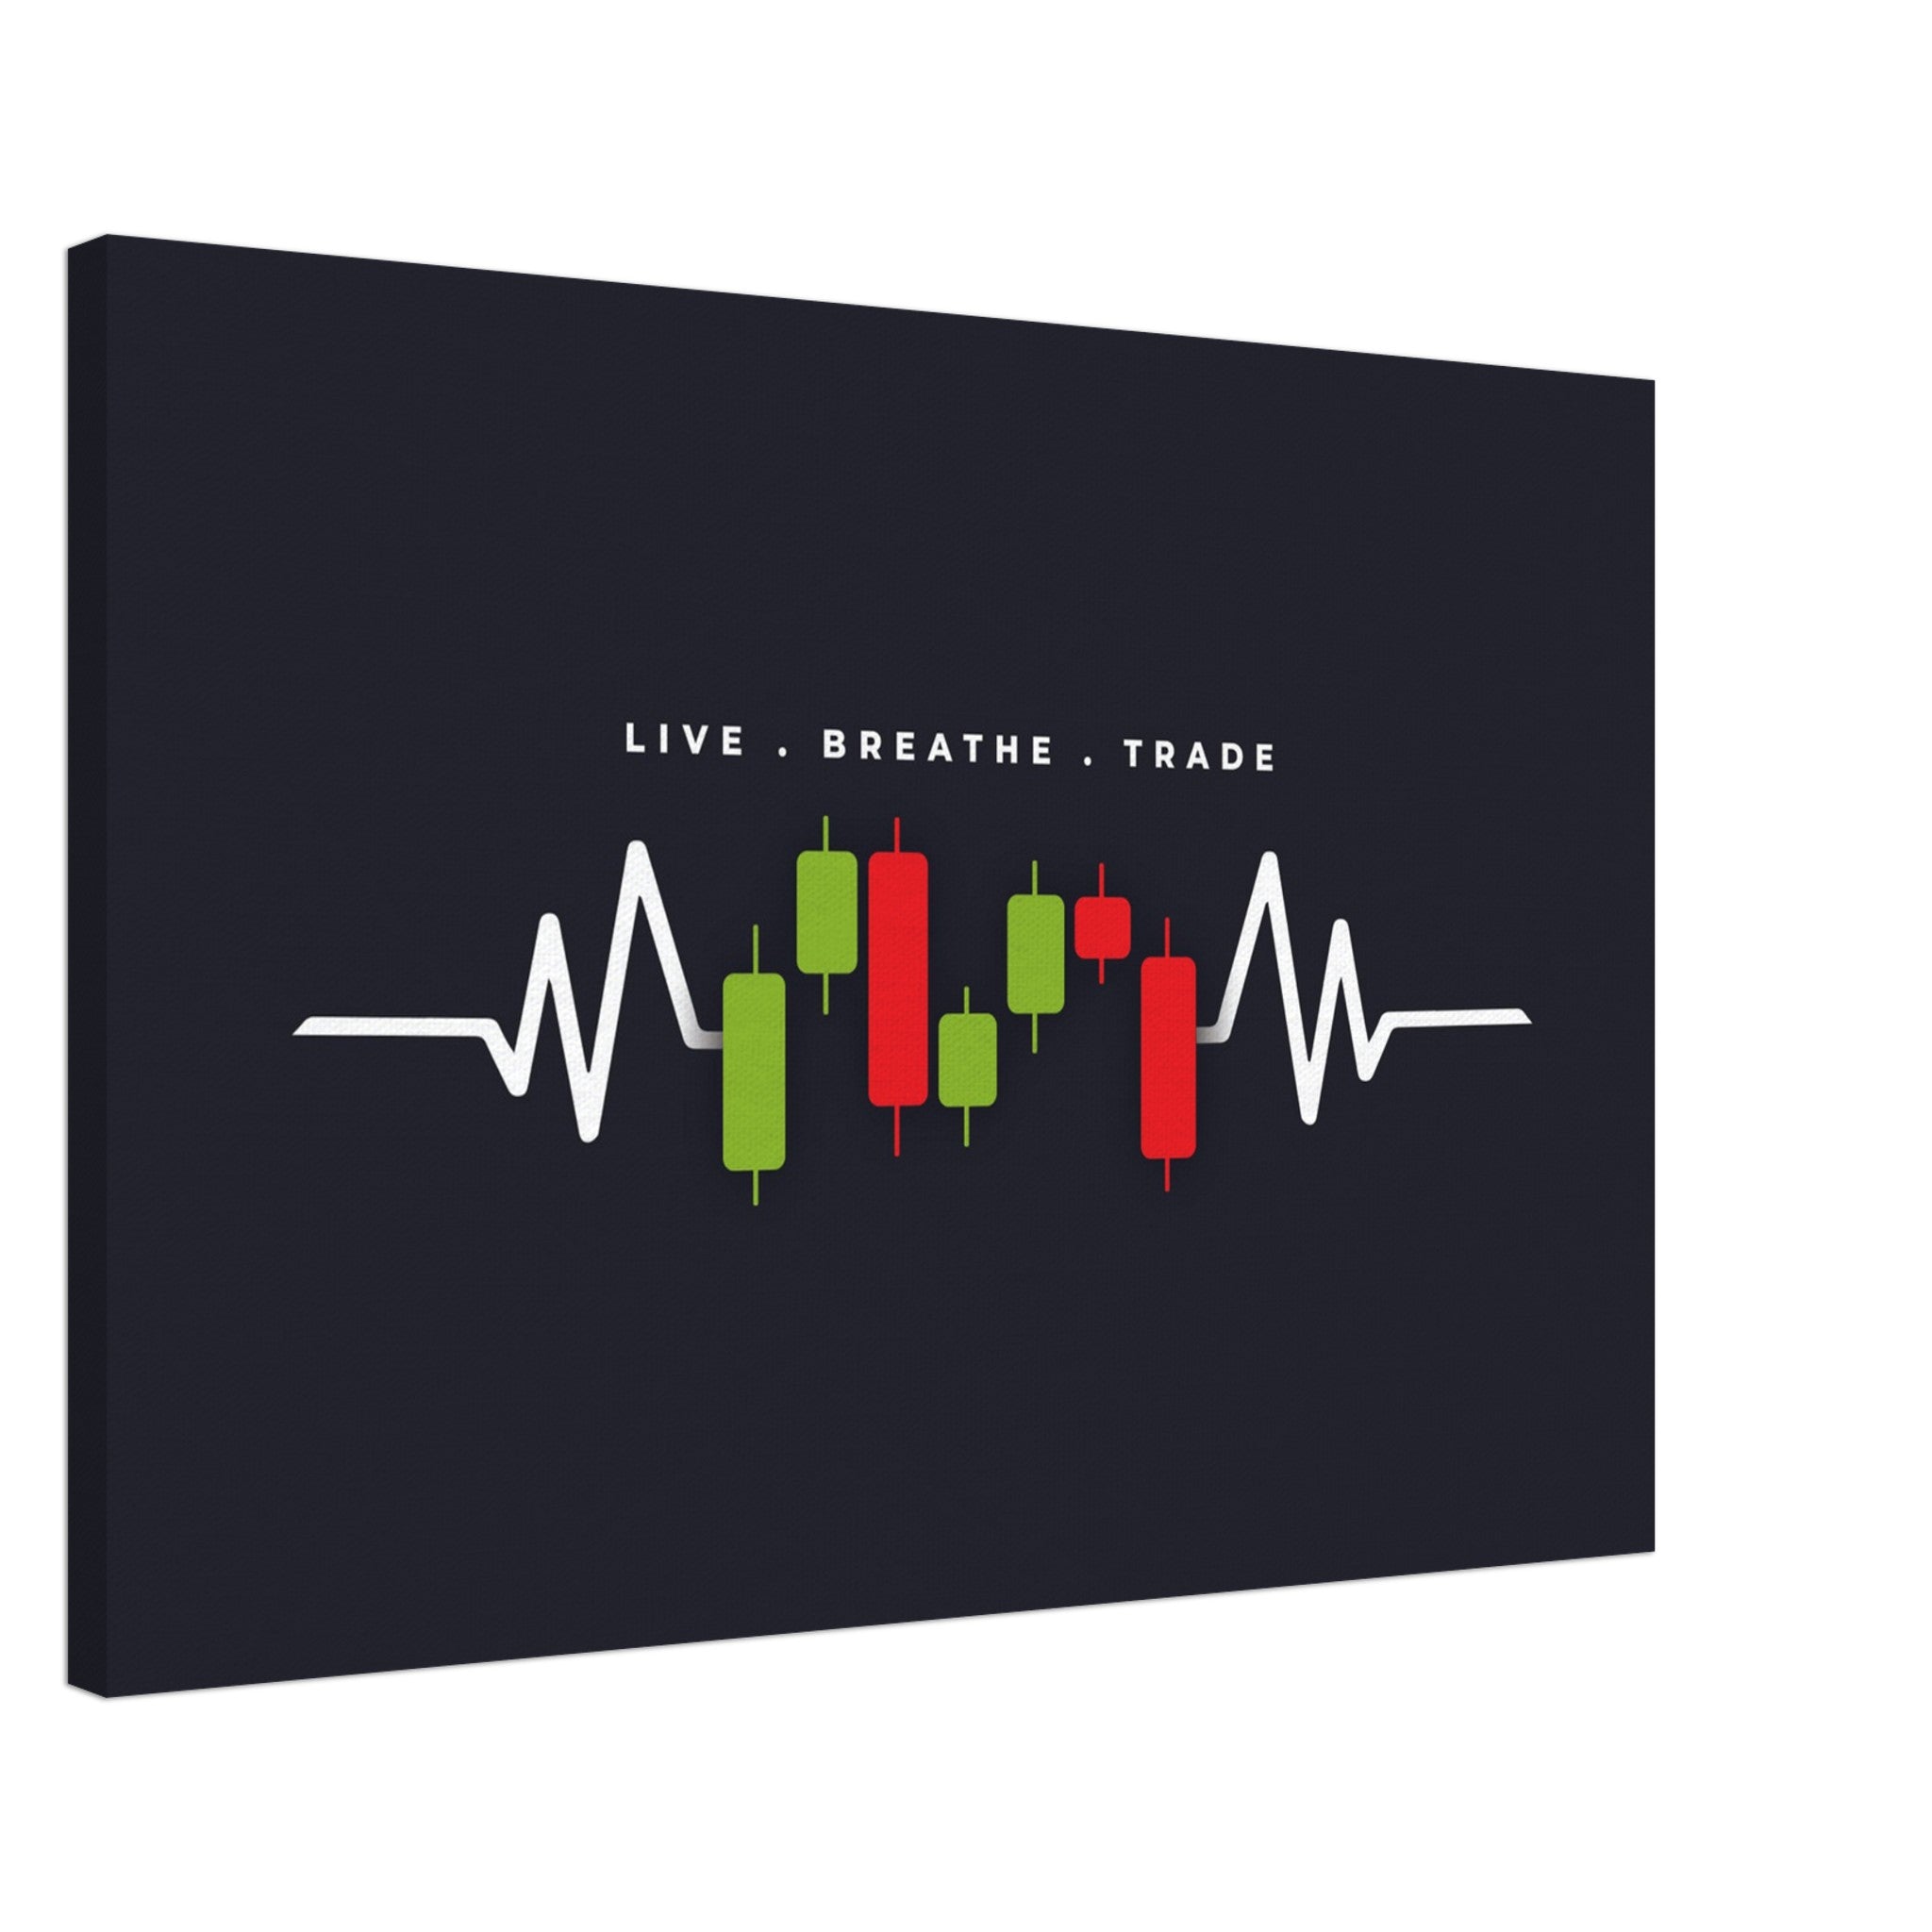 Live, Breathe, Trade (Version 2)